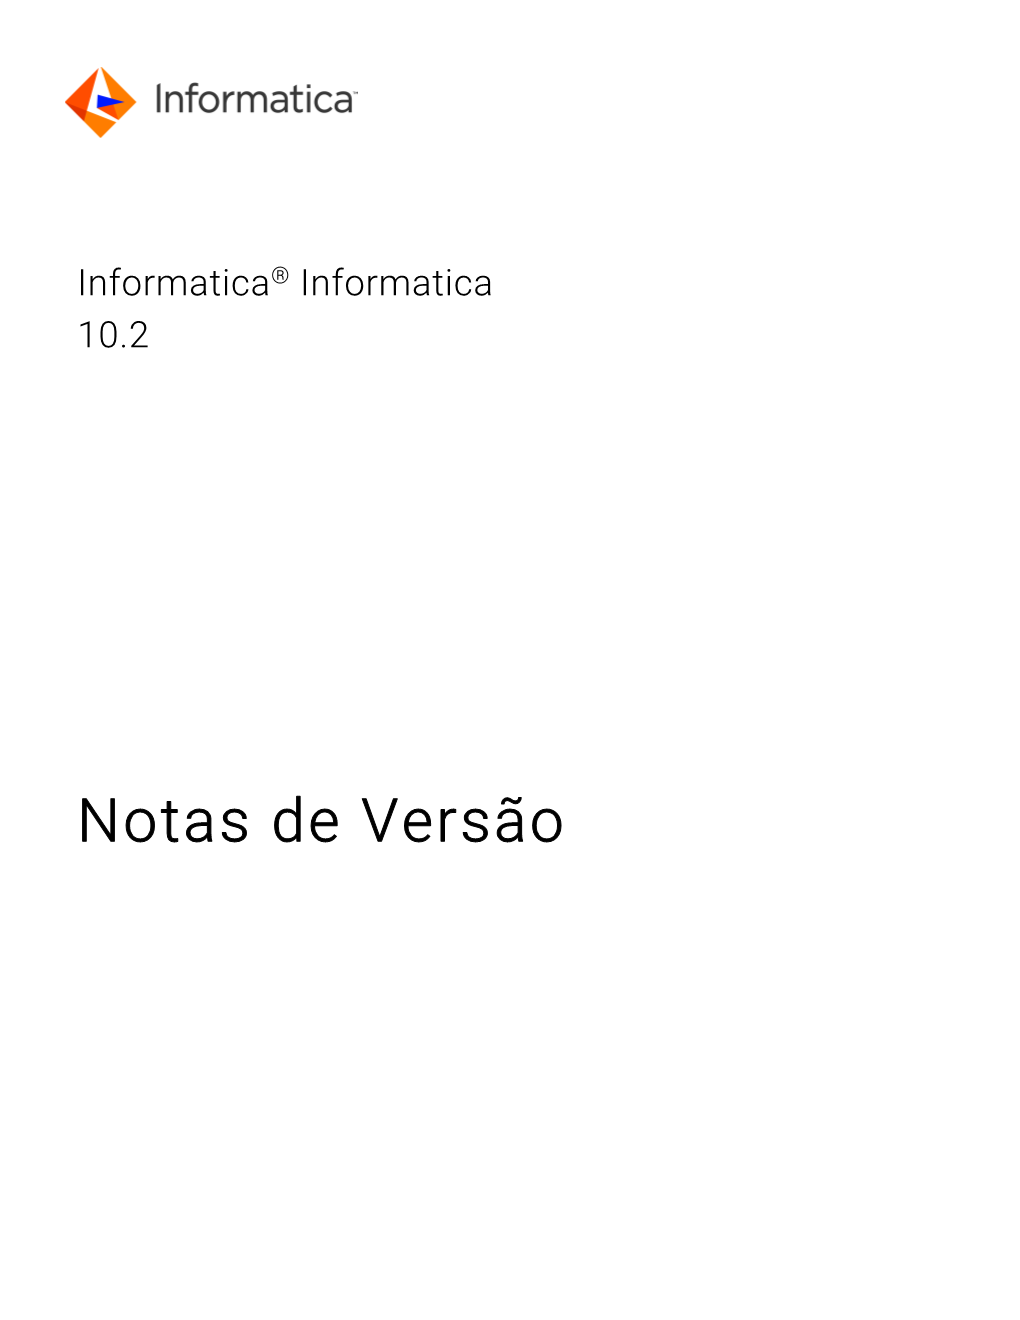 Informatica® Informatica 10.2